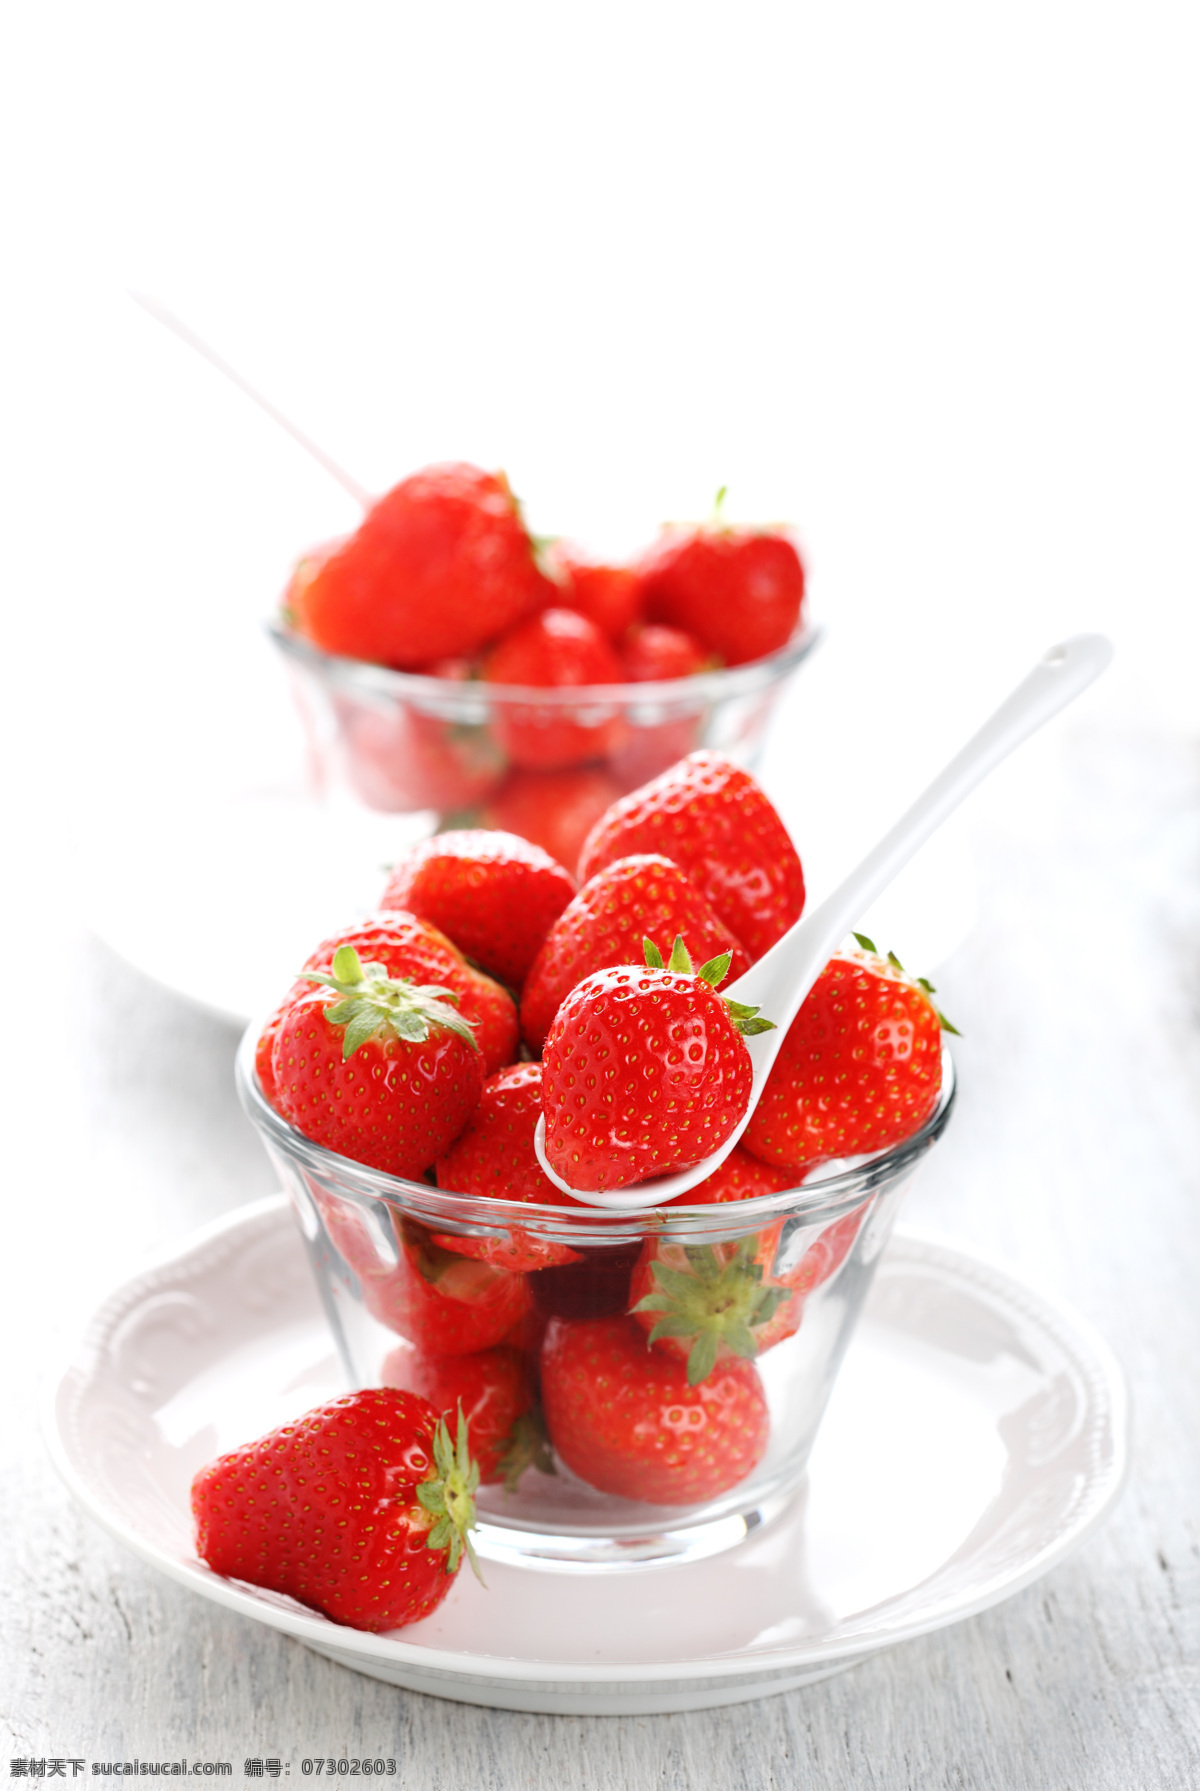 新鲜 草莓 果实 新鲜草莓 新鲜水果 水果摄影 勺子 盘子 蔬菜图片 餐饮美食